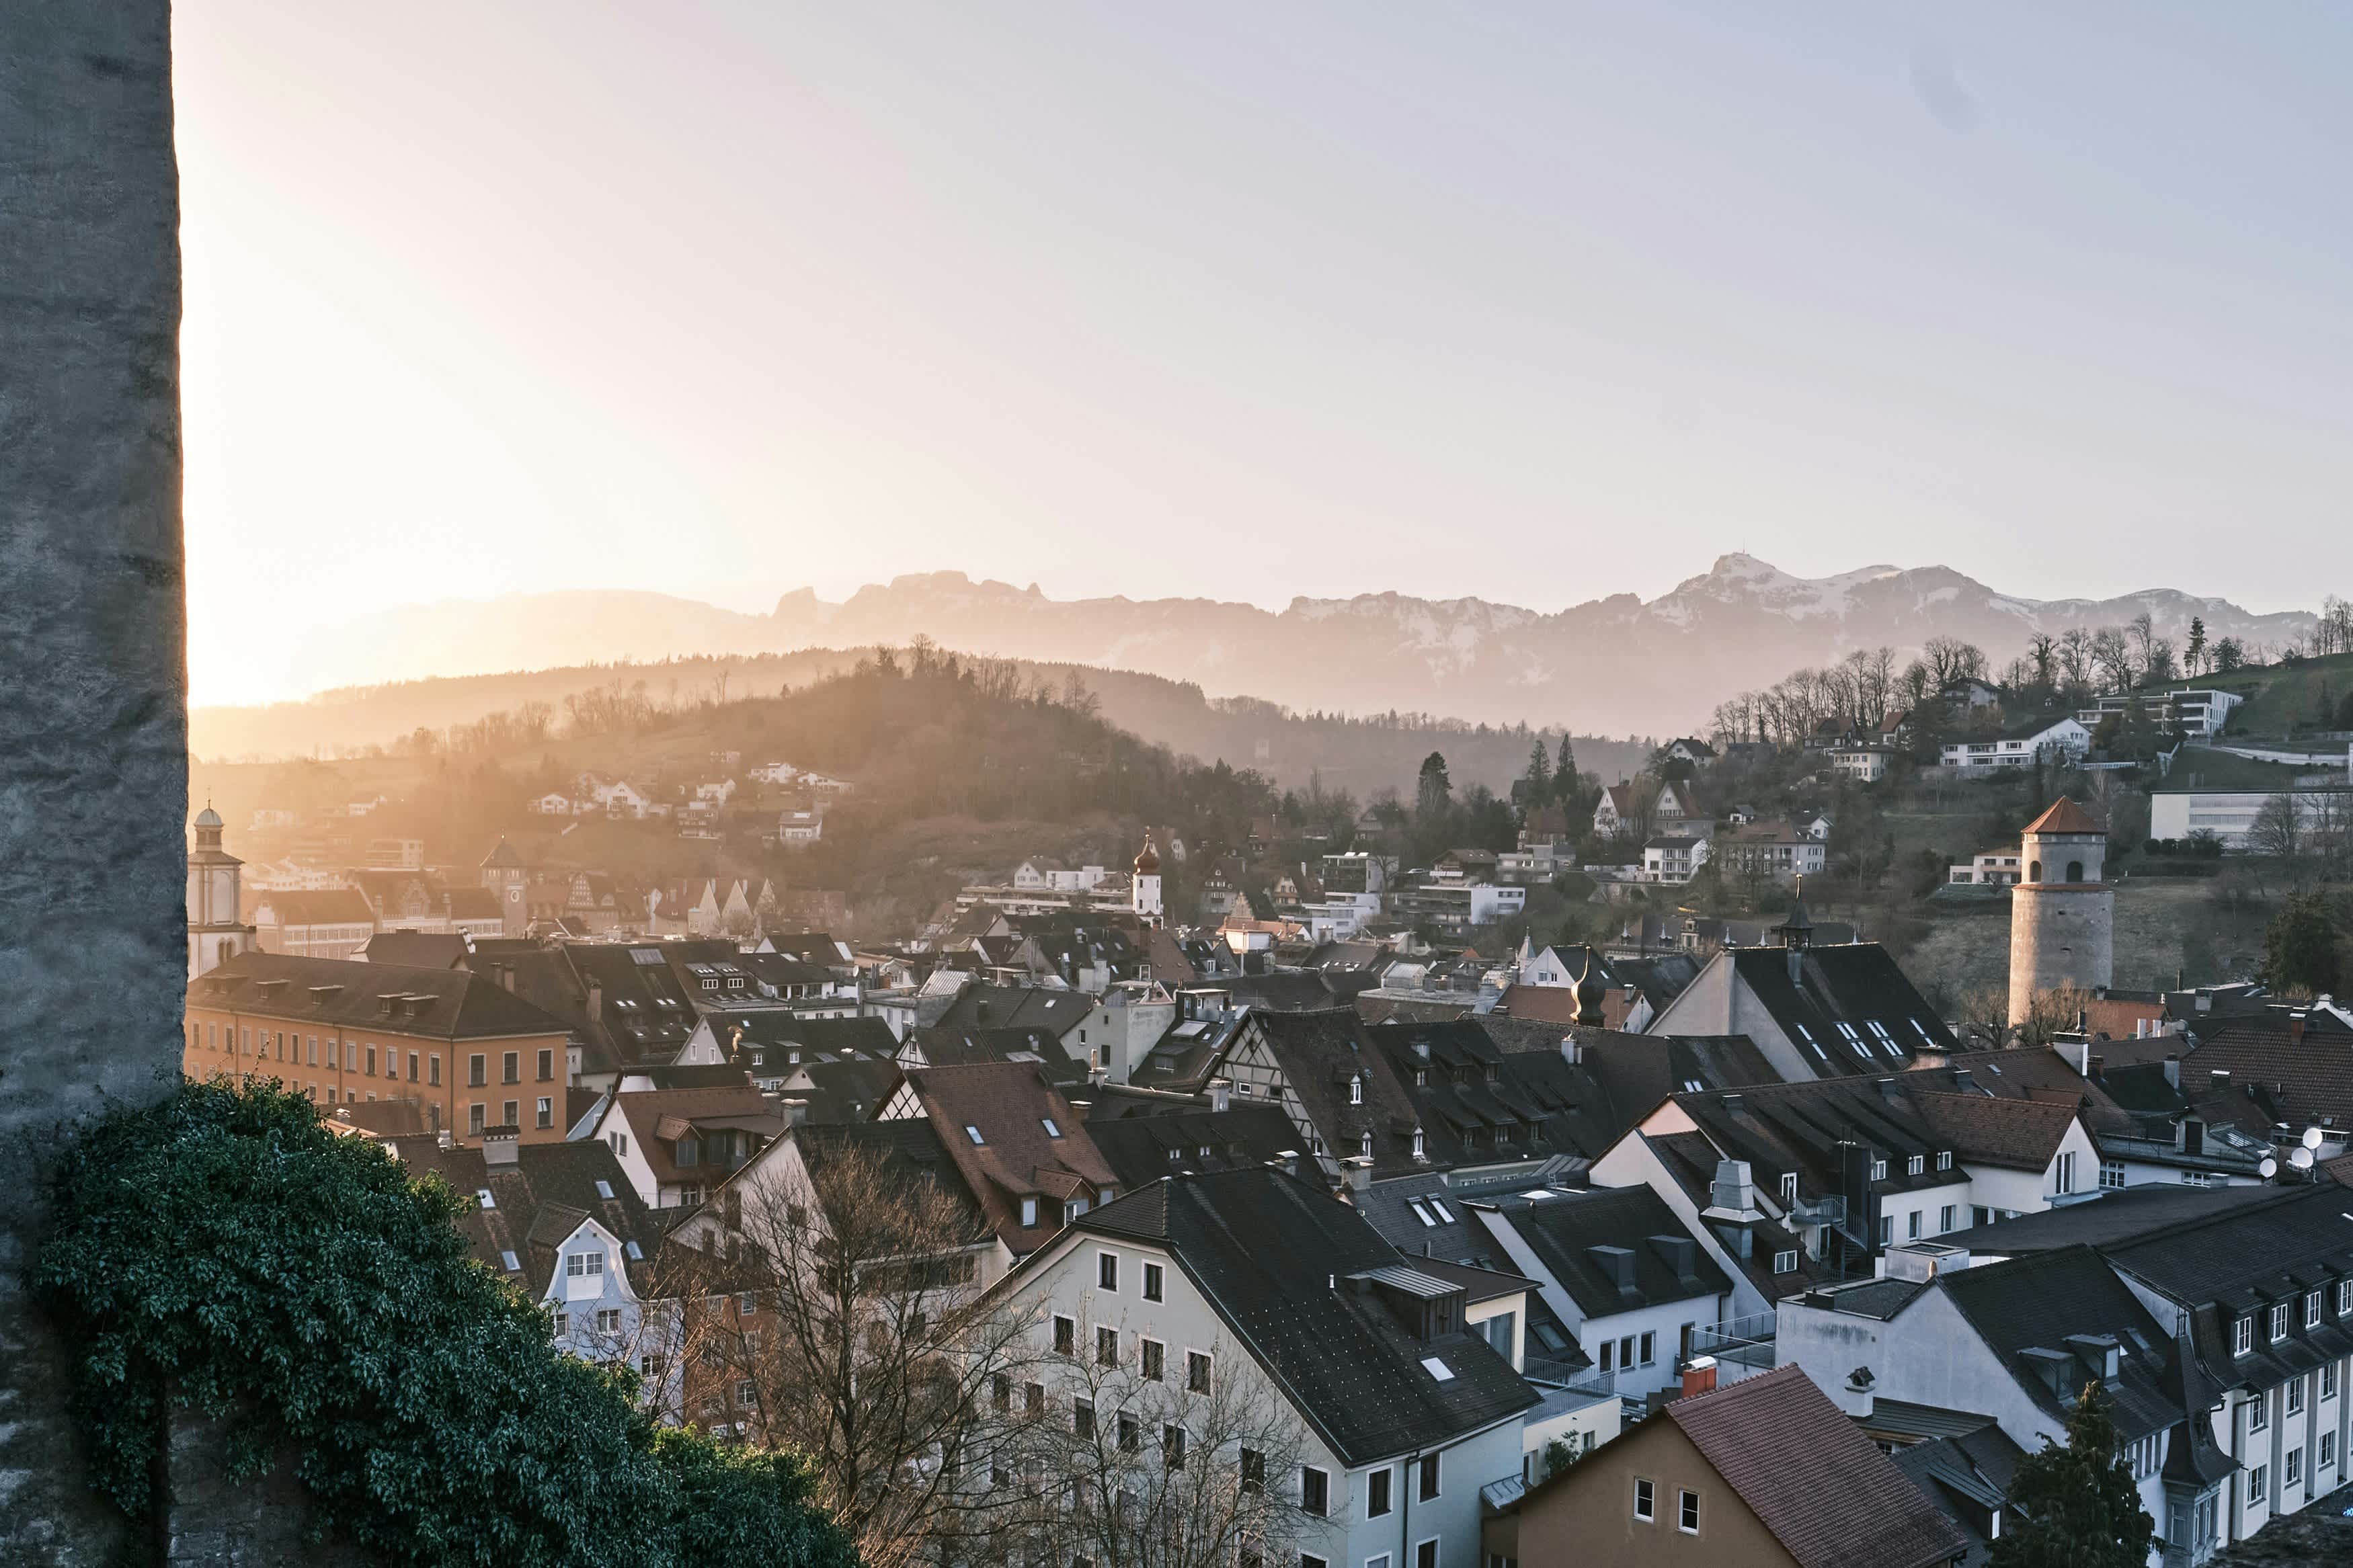 Entdecke das lebenswerte Vorarlberg in Wolfurt: Idyllische Natur, traditionelle Kultur und hohe Lebensqualität vereint. Erlebe die regionale Bedeutung hautnah.